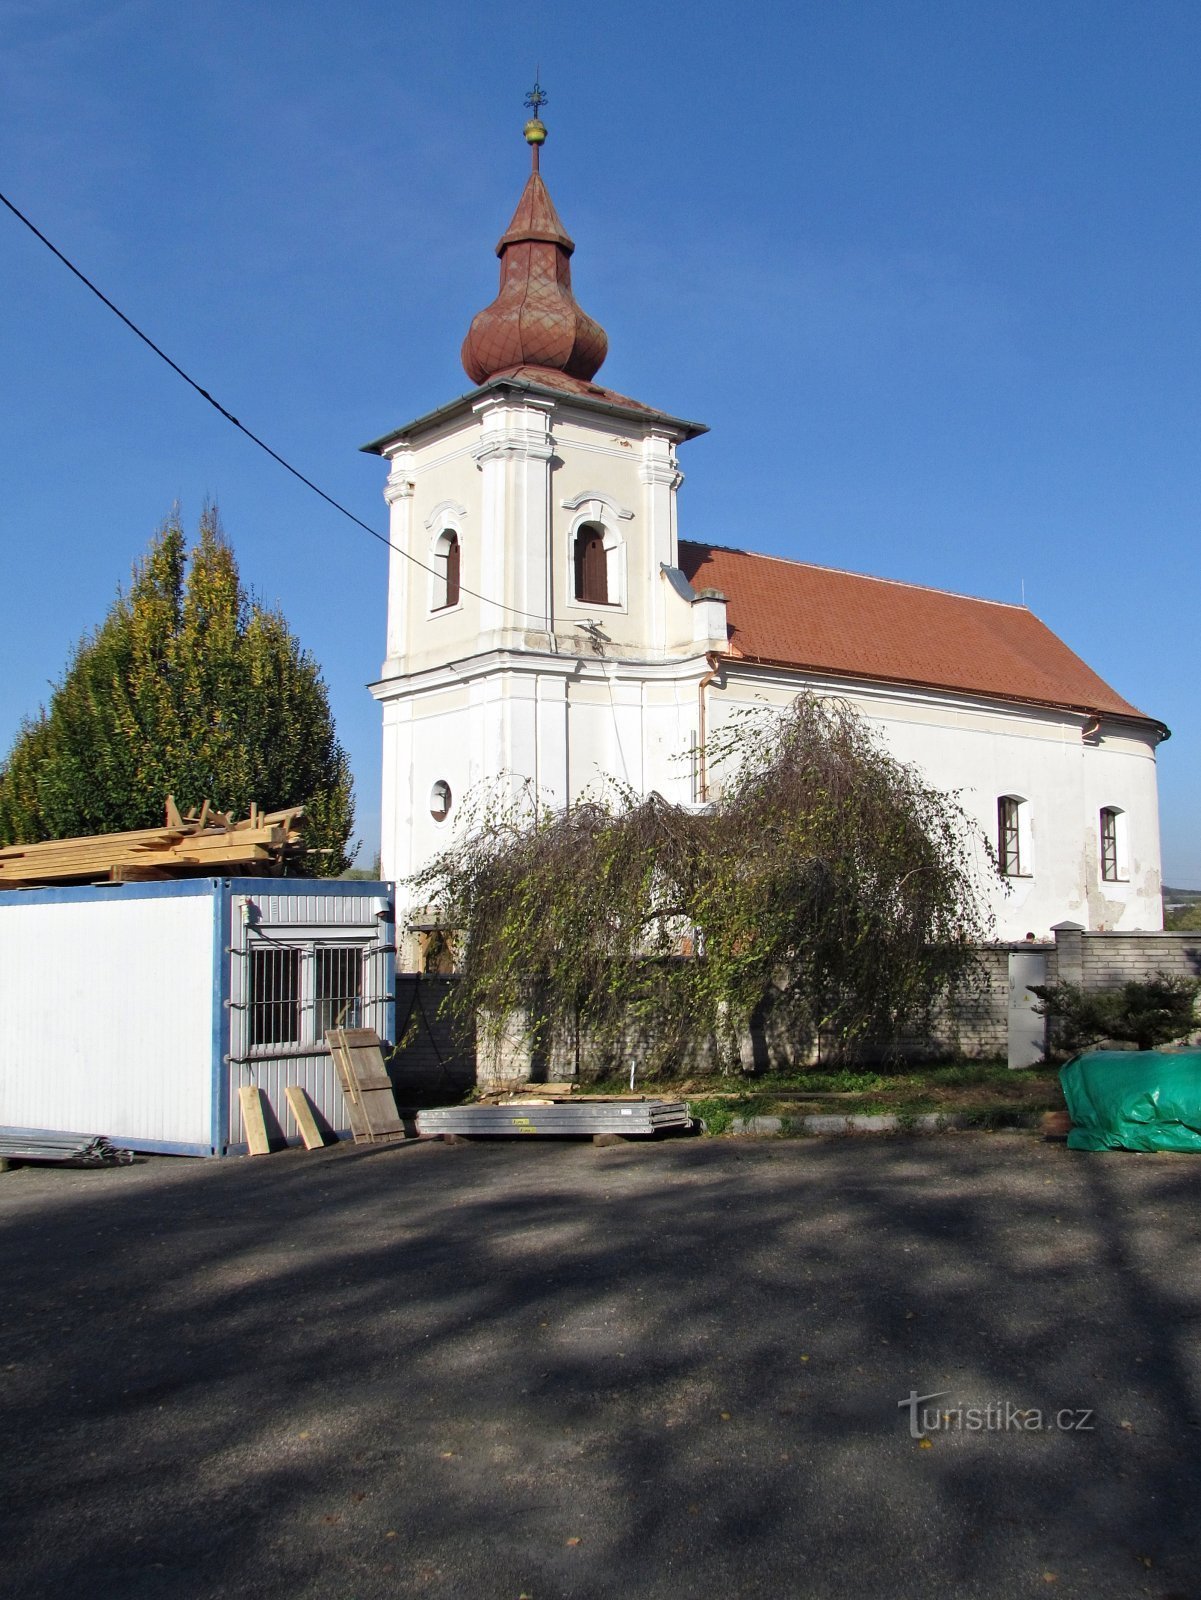 Леопольдов - церковь св. Джайлса